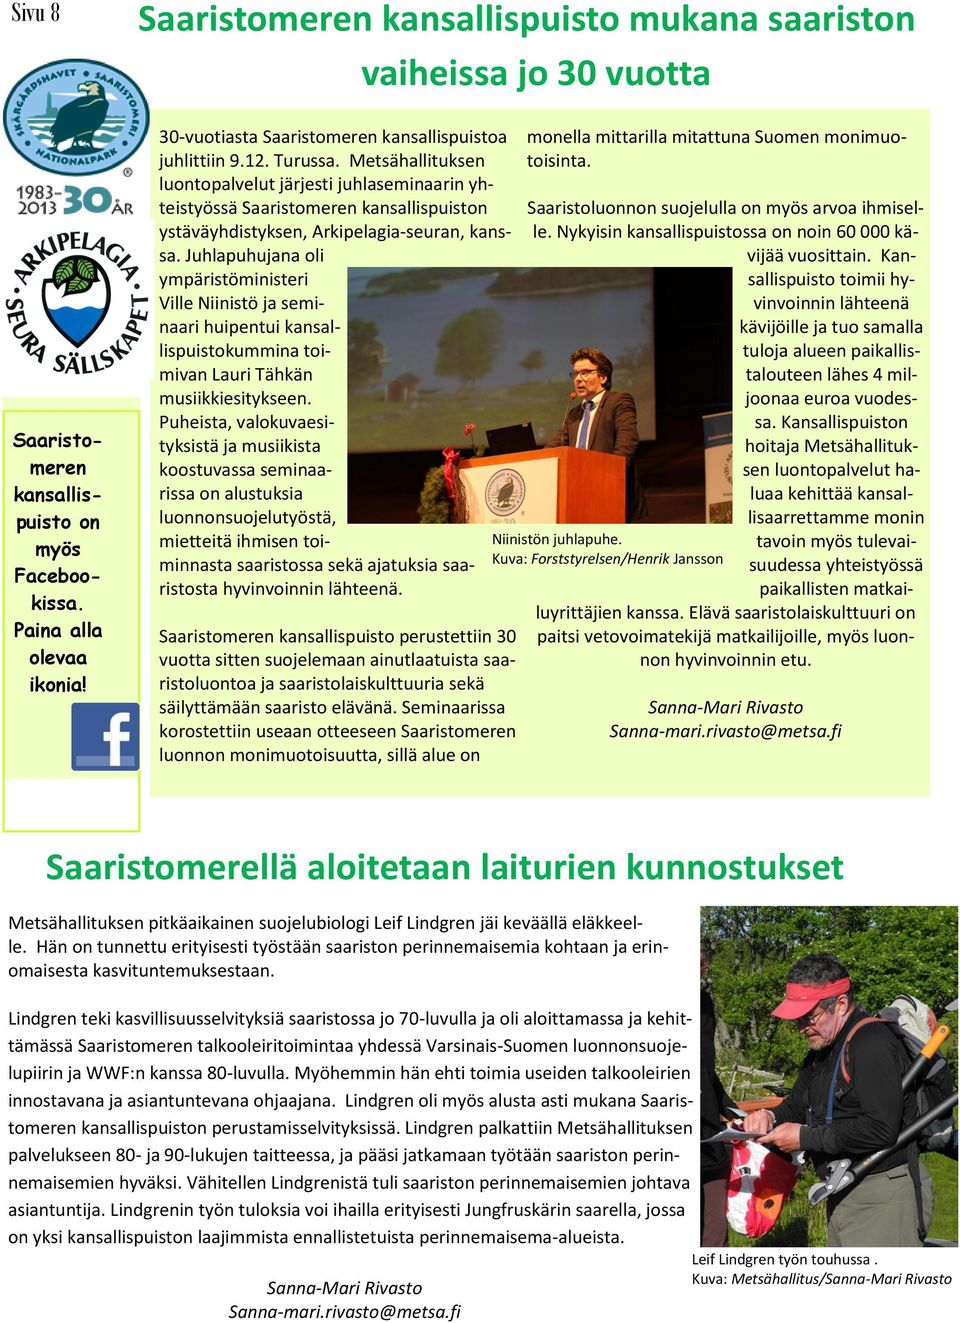 Metsähallituksen luontopalvelut järjesti juhlaseminaarin yhteistyössä Saaristomeren kansallispuiston ystäväyhdistyksen, Arkipelagia-seuran, kanssa.